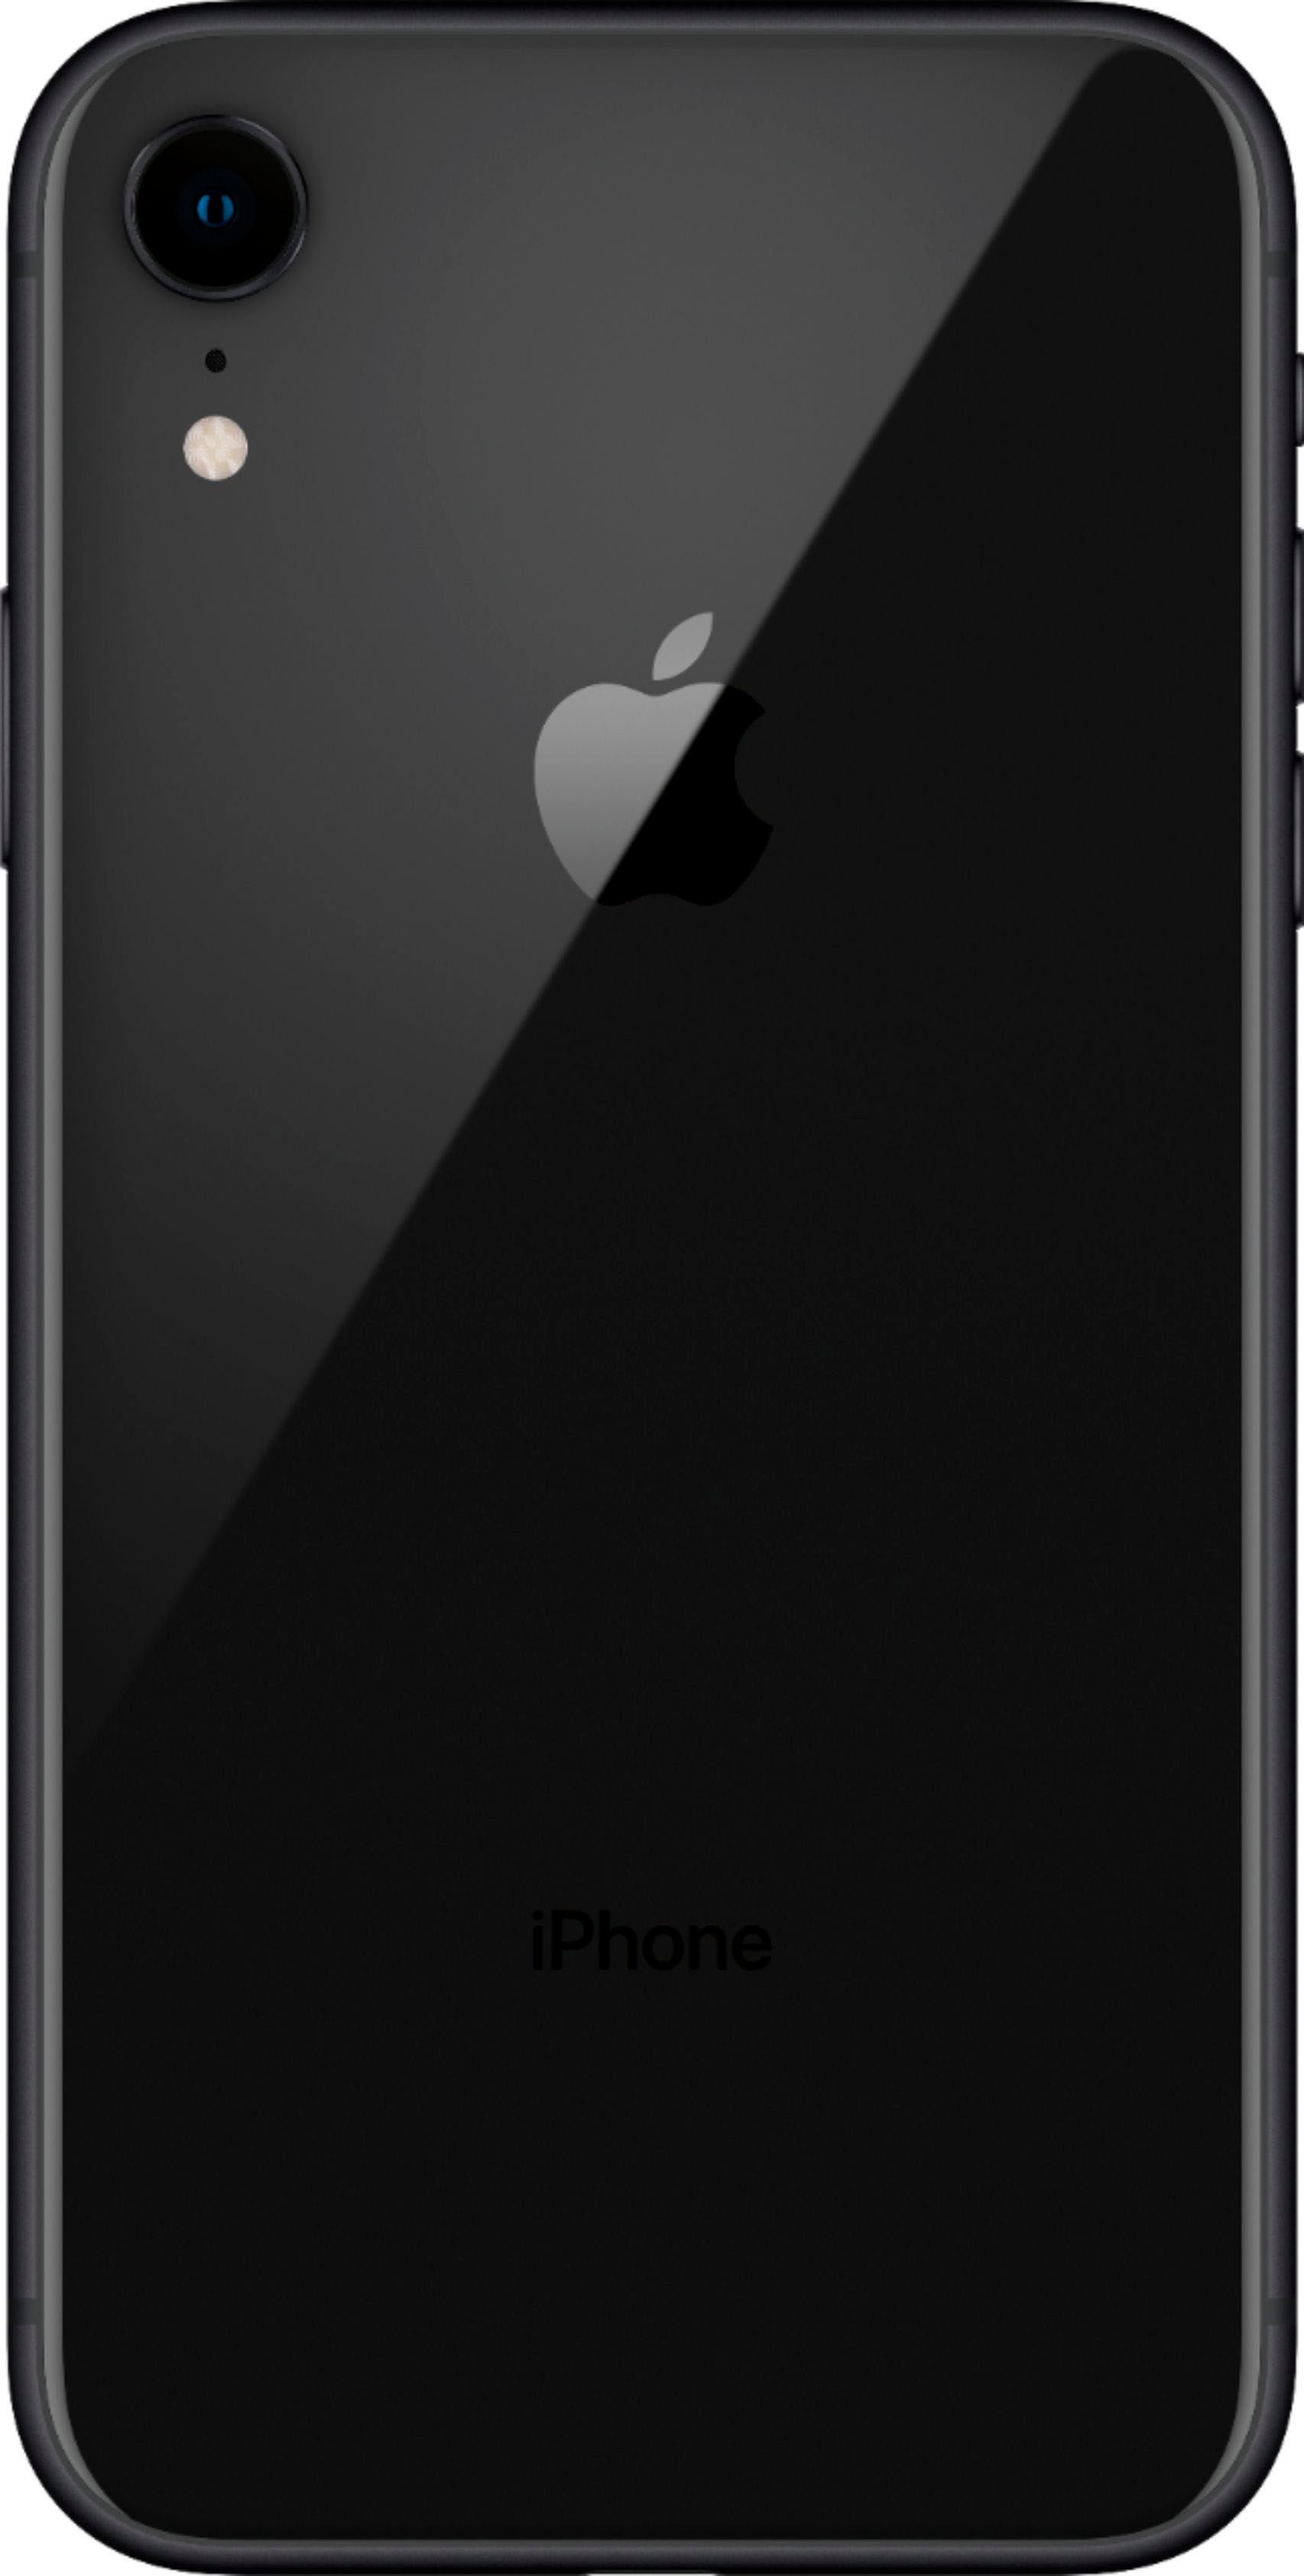 Apple Pre-Owned iPhone XR 64GB (Unlocked) Black XR-64GB-BLK - Best Buy